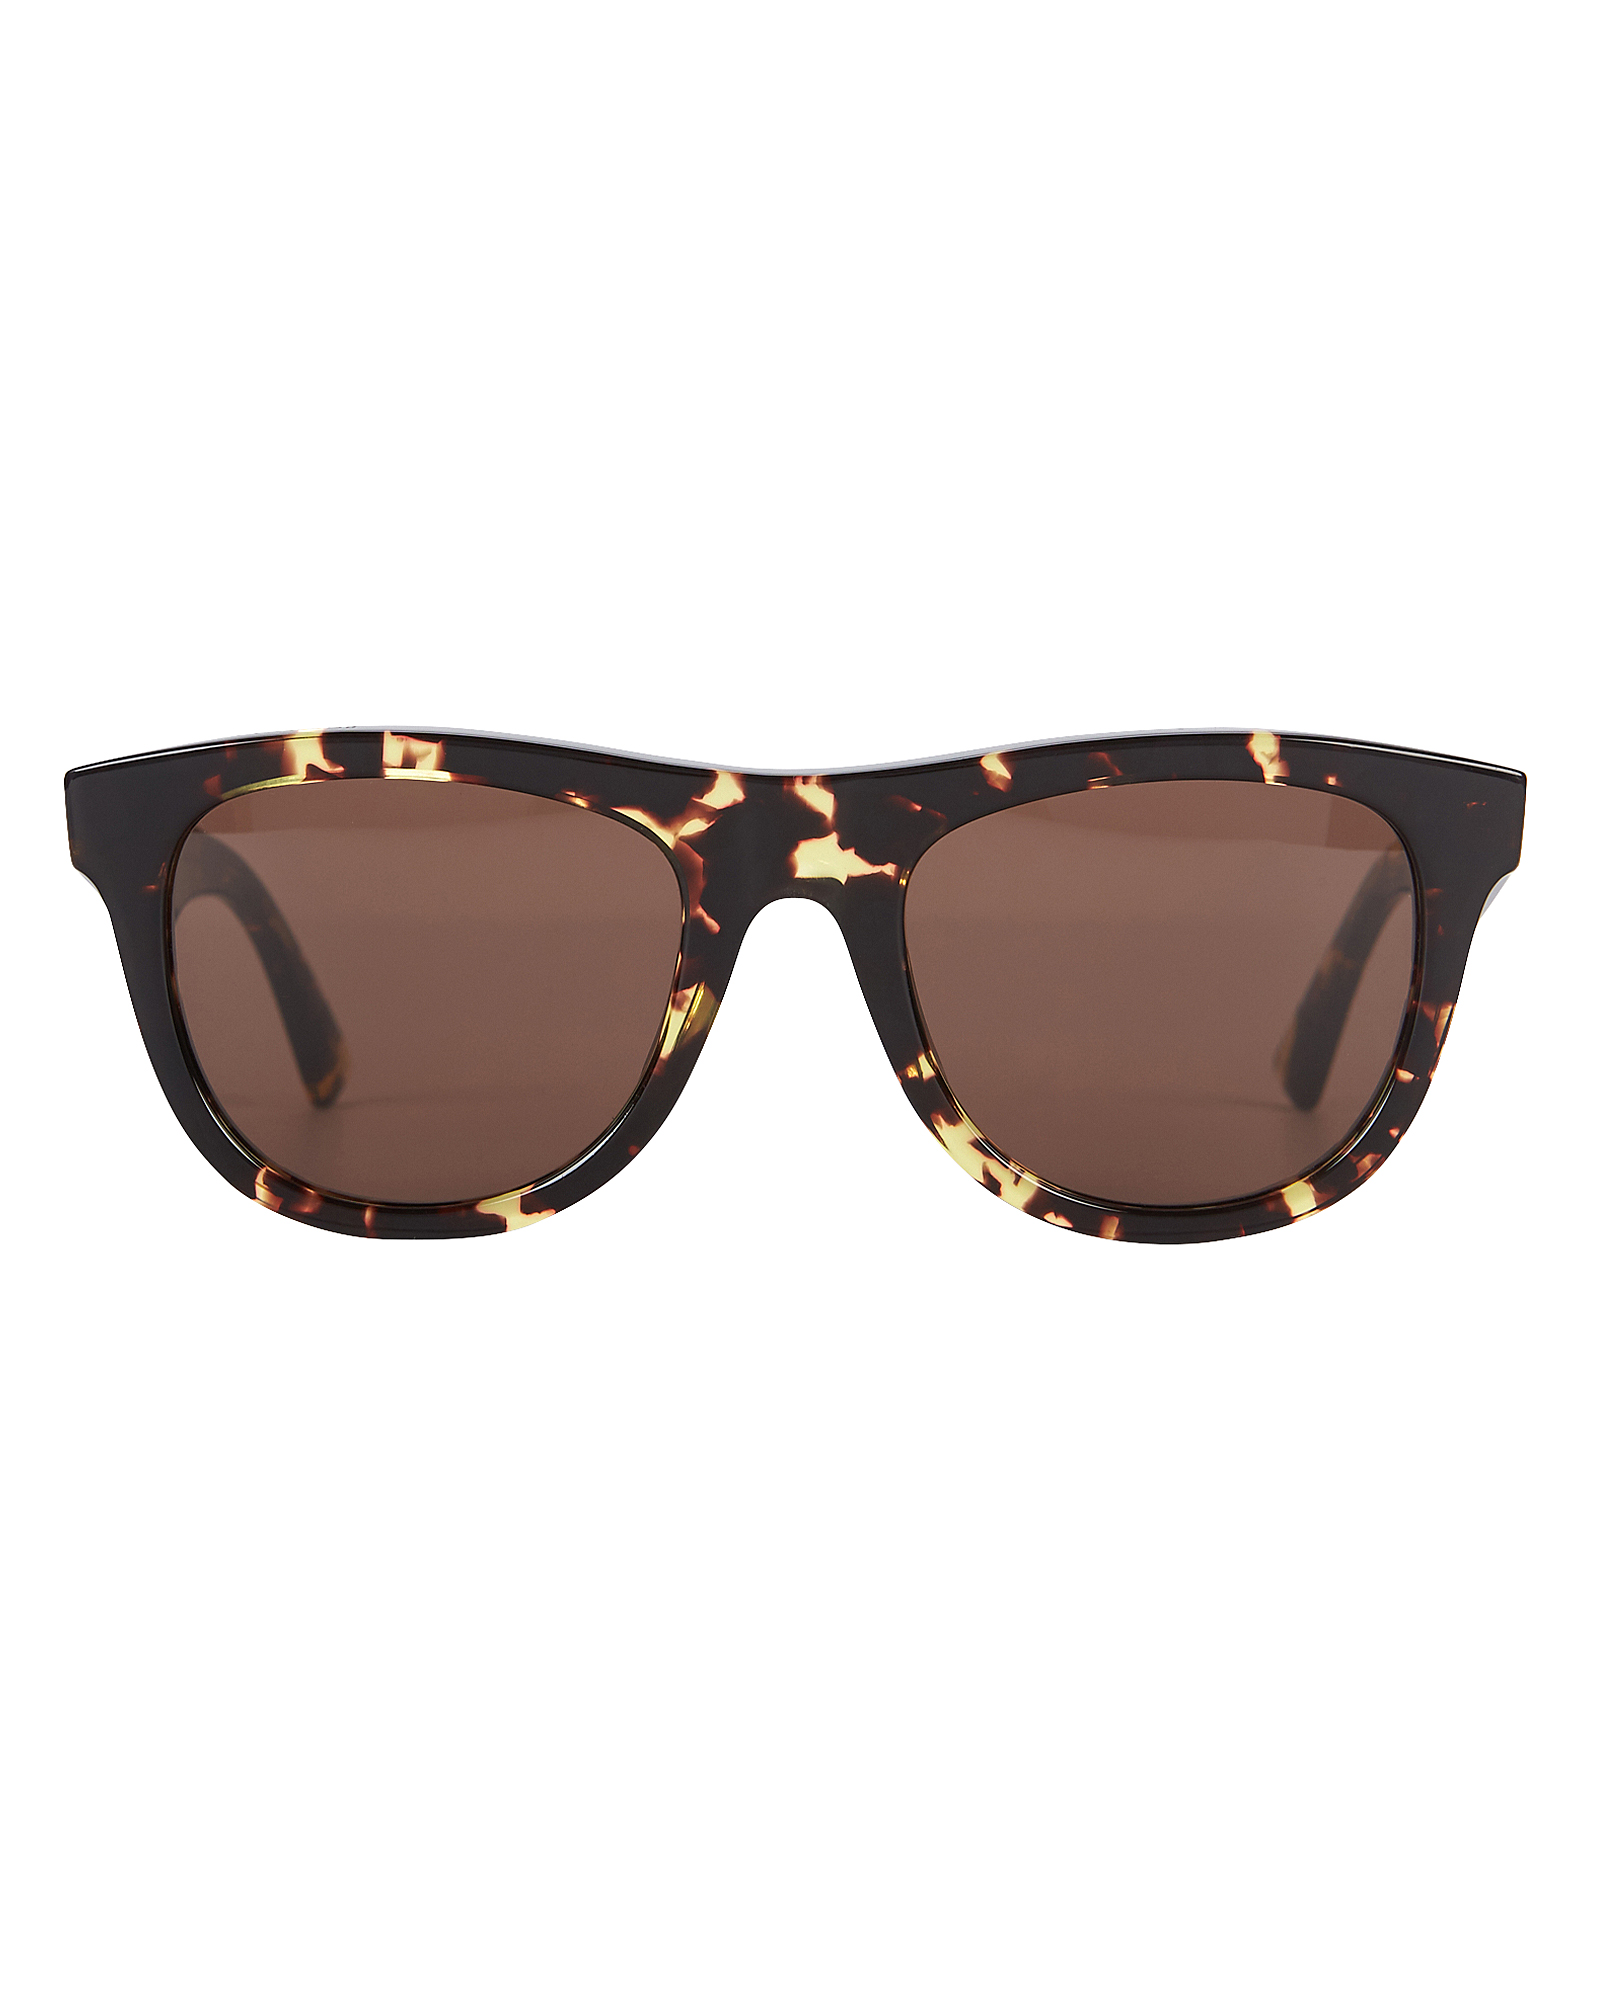 Bottega Veneta | Spotted Havana Wayfarer Sunglasses | INTERMIX®